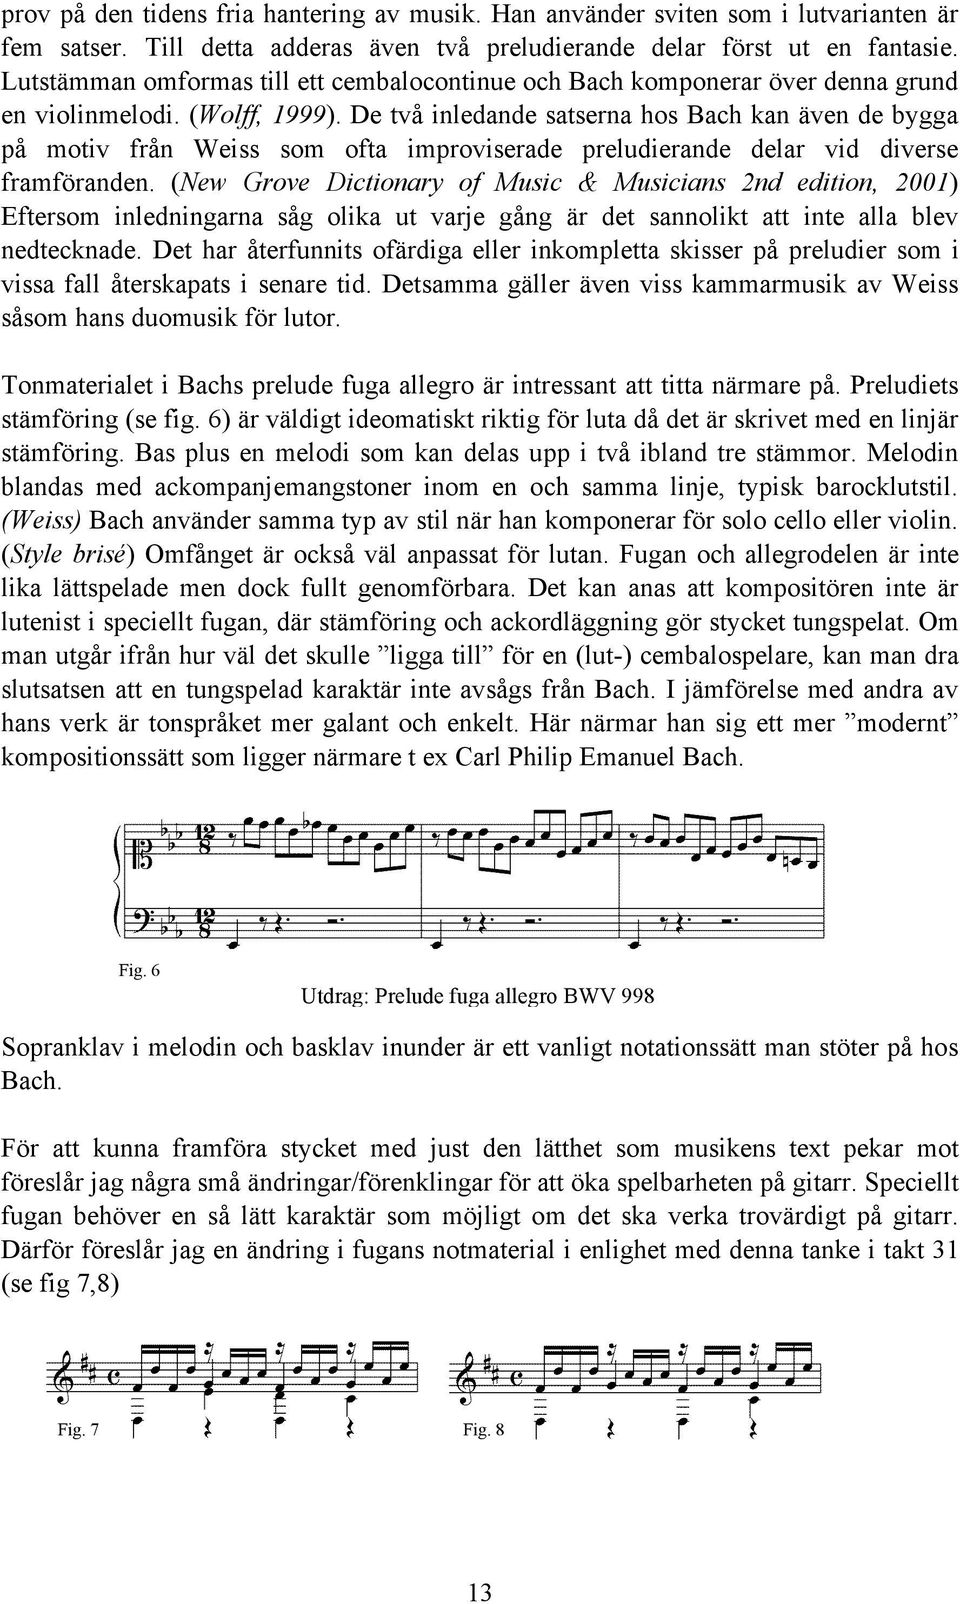 De två inledande satserna hos Bach kan även de bygga på motiv från Weiss som ofta improviserade preludierande delar vid diverse framföranden.